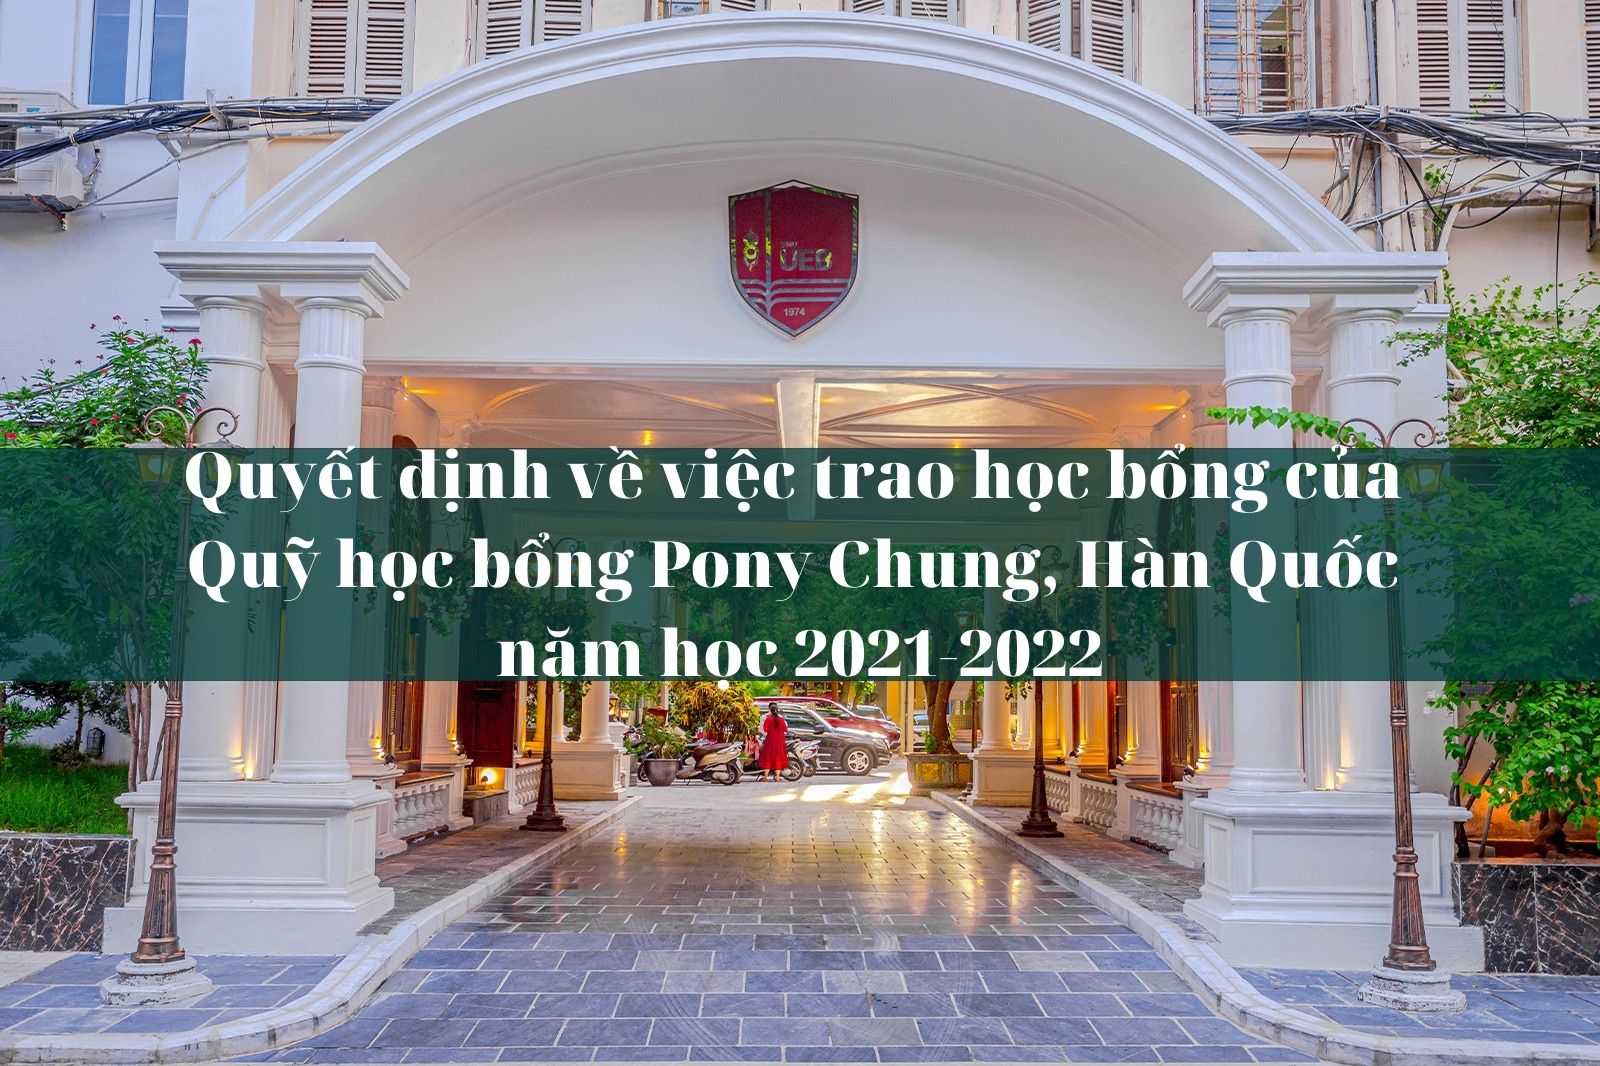 Quyết định về việc trao học bổng của Quỹ học bổng Pony Chung, Hàn Quốc năm học 2021-2022